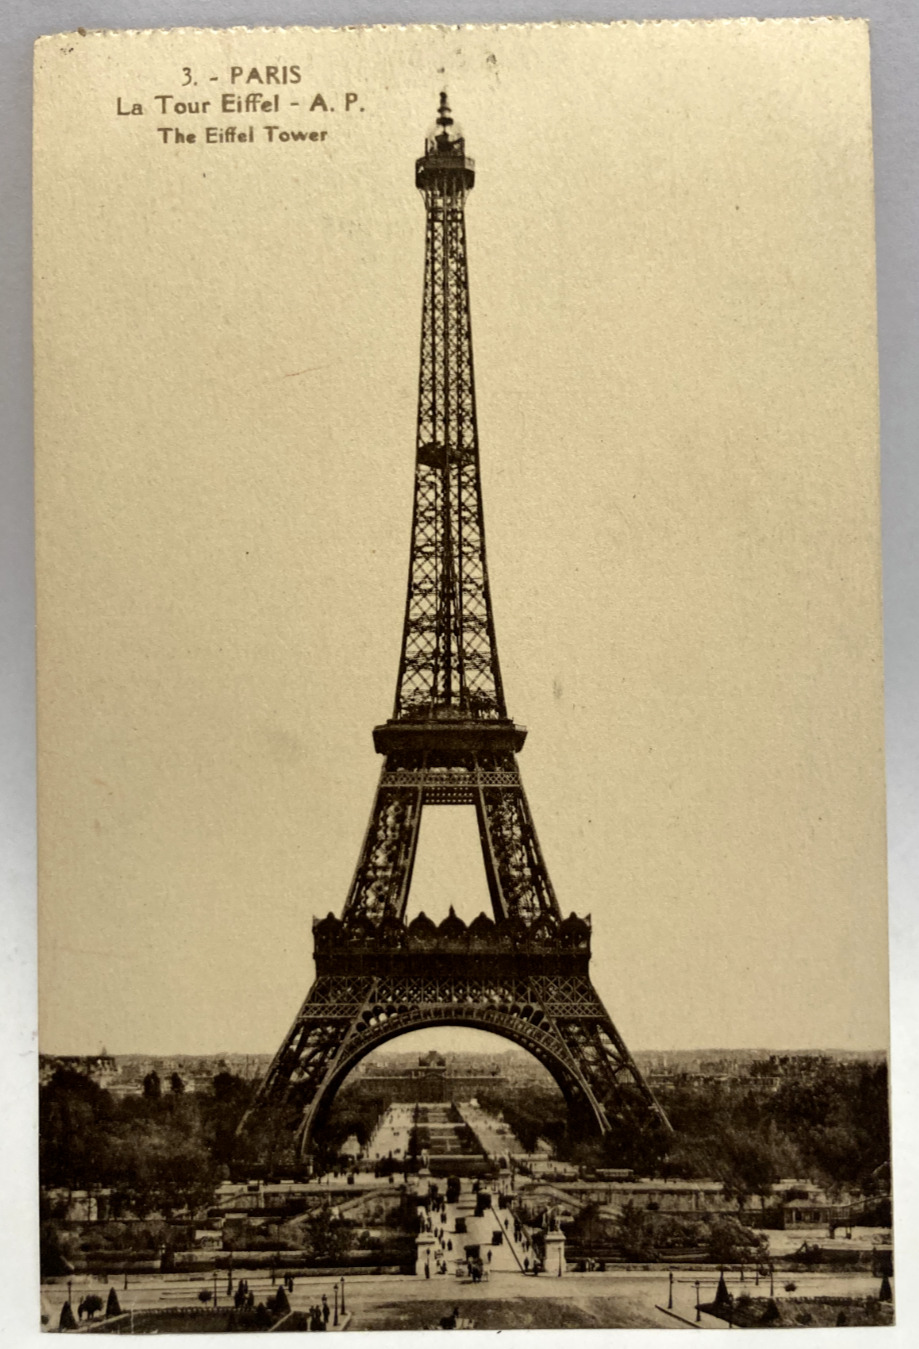 The Eiffel Tower, Paris France, Vintage Postcard